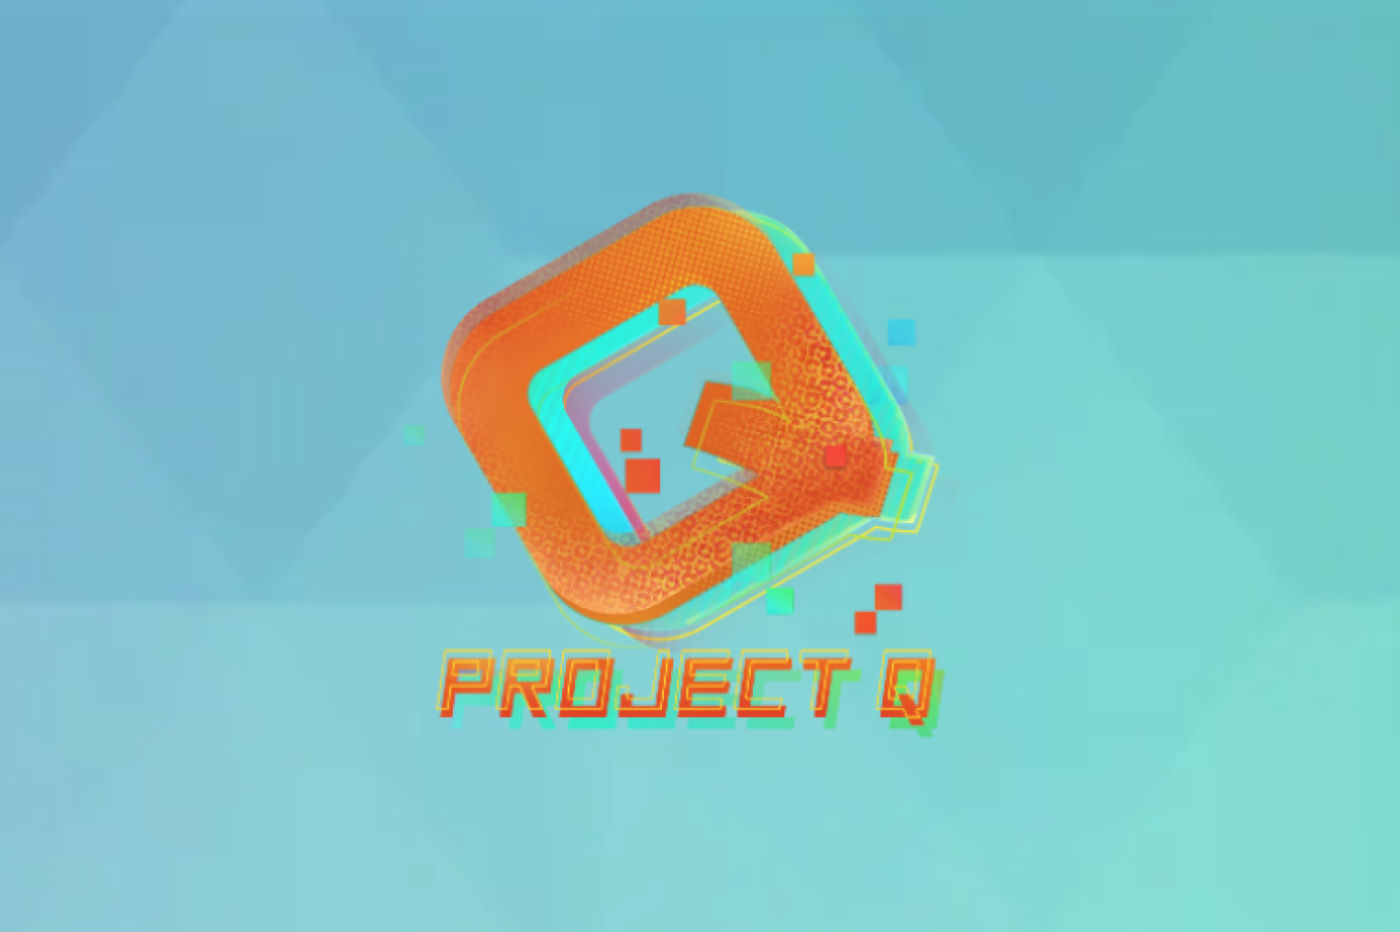 Logo promotionnel du nouveau jeu Project Q d'Ubisoft. Lettre Q en grande avec le nom juste en dessous.